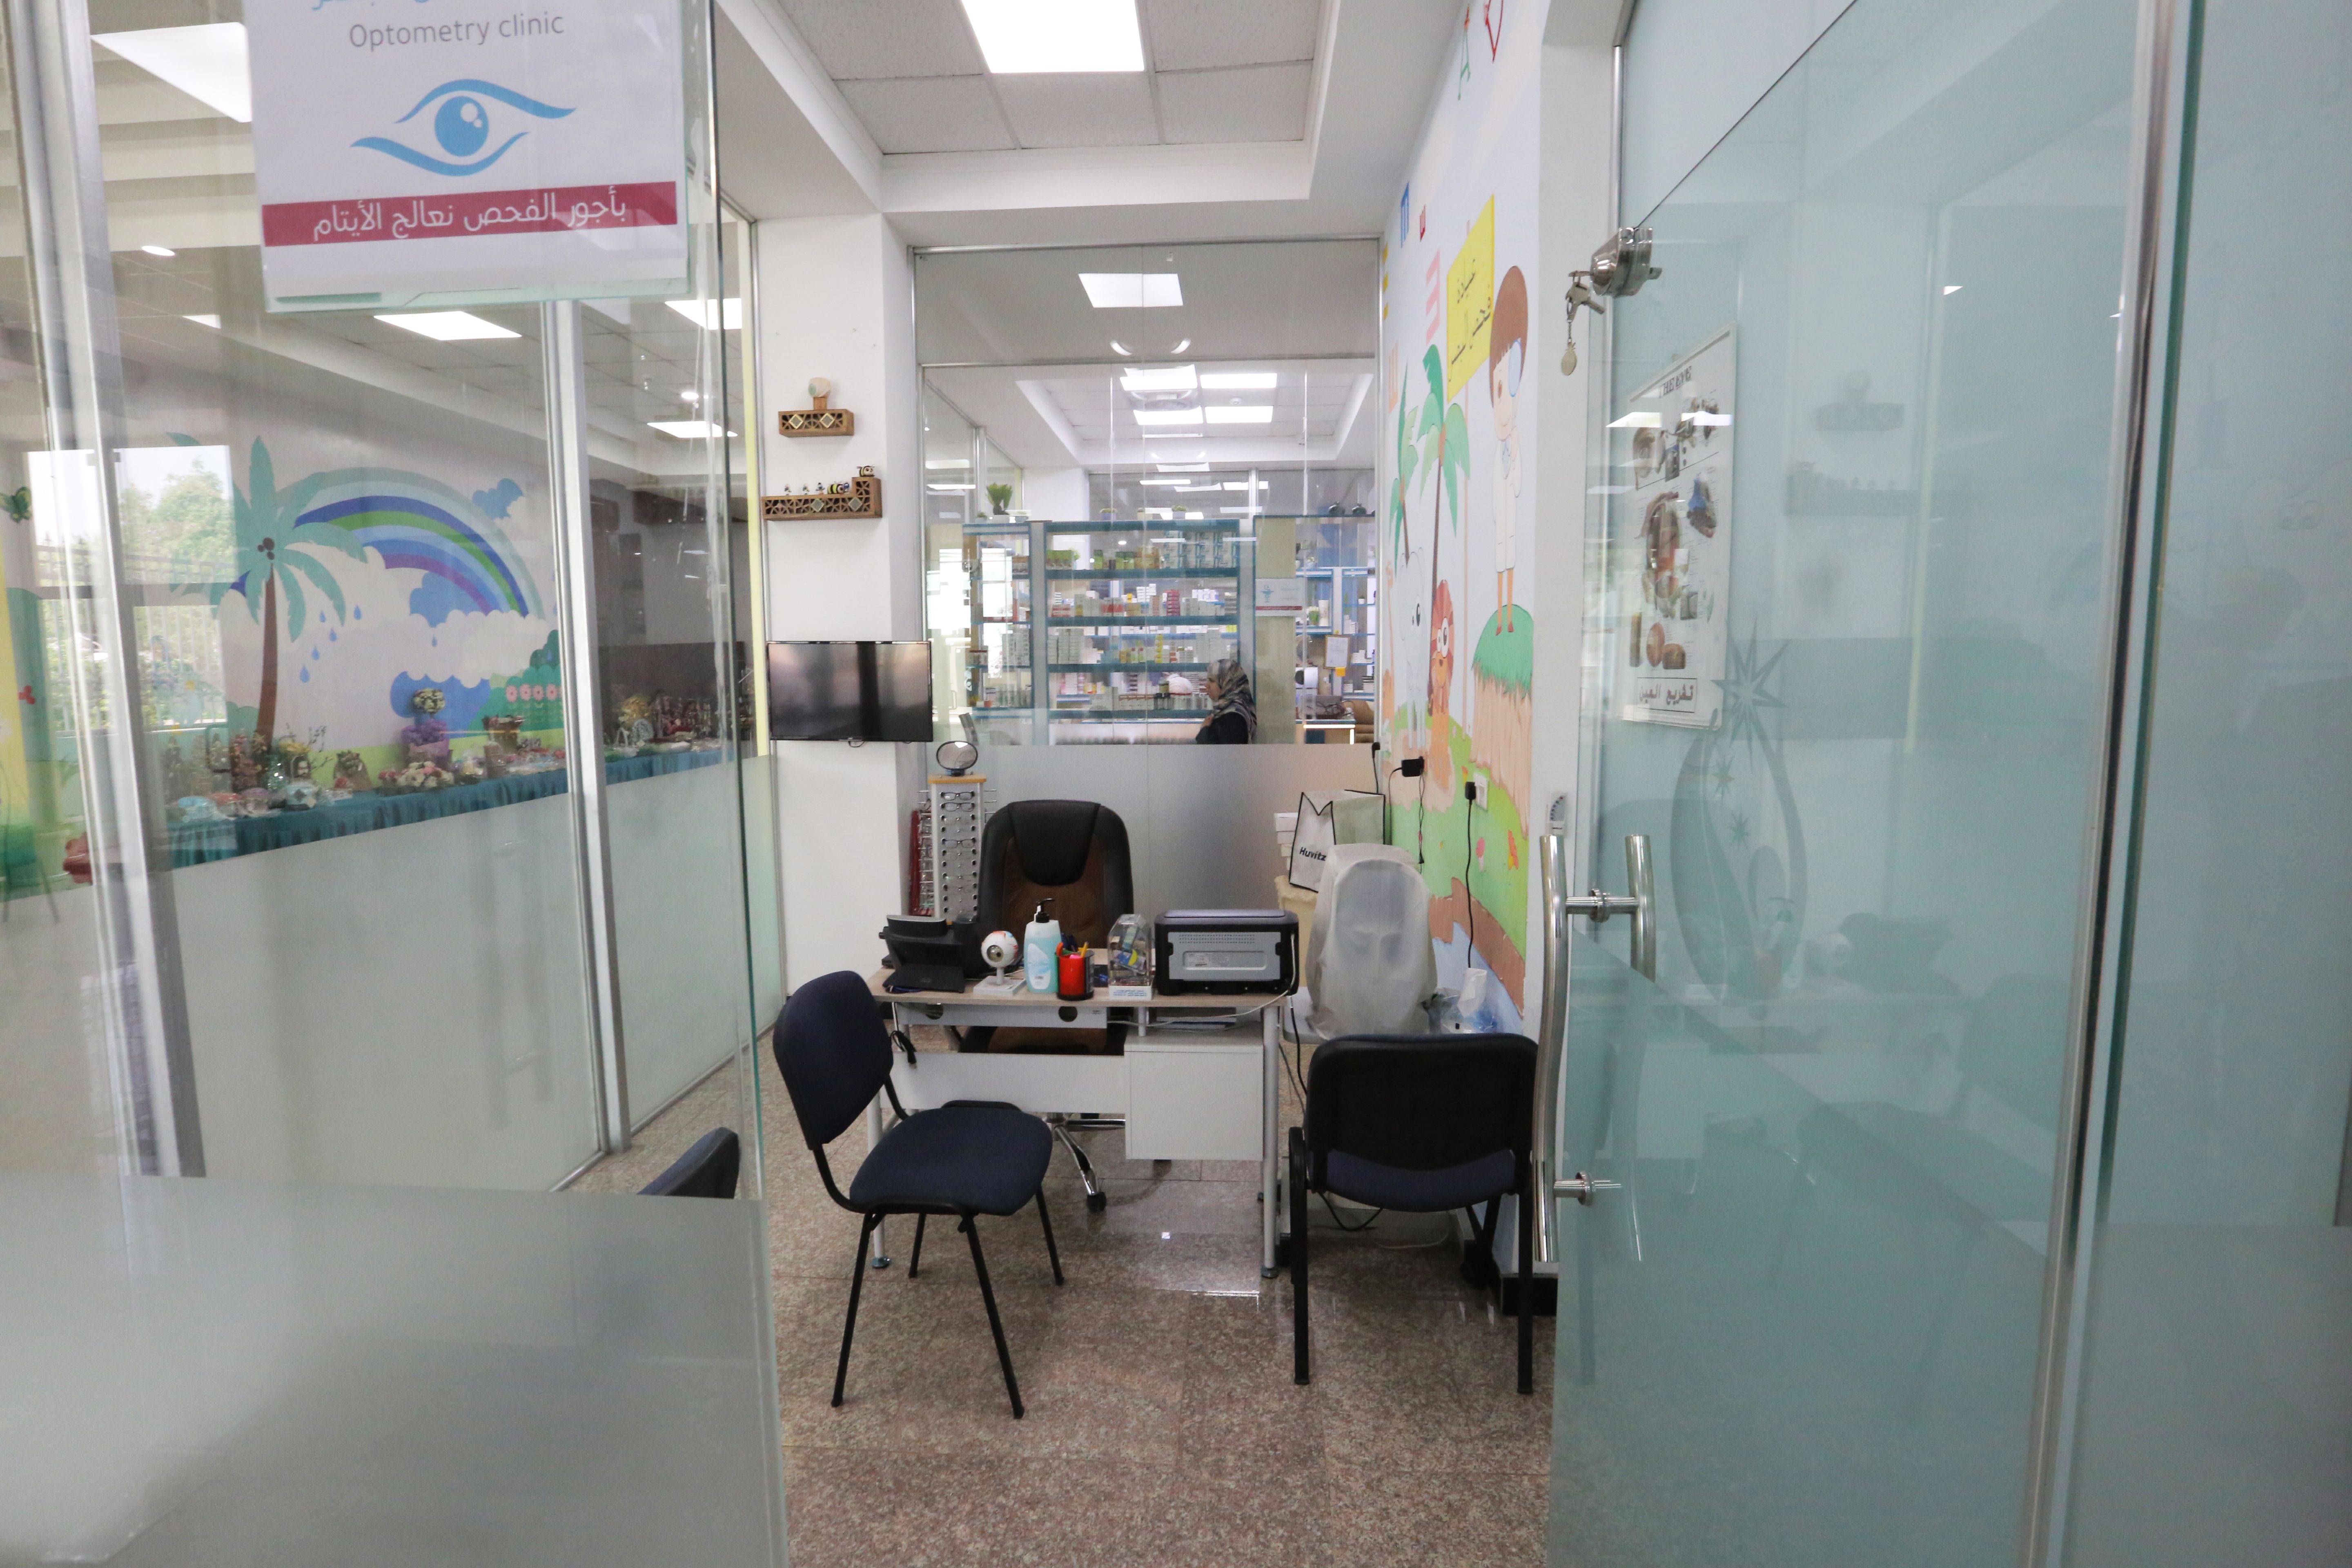 وفد من معهد القرآن الكريم يزور مؤسسة العين لرعاية الاجتماعية